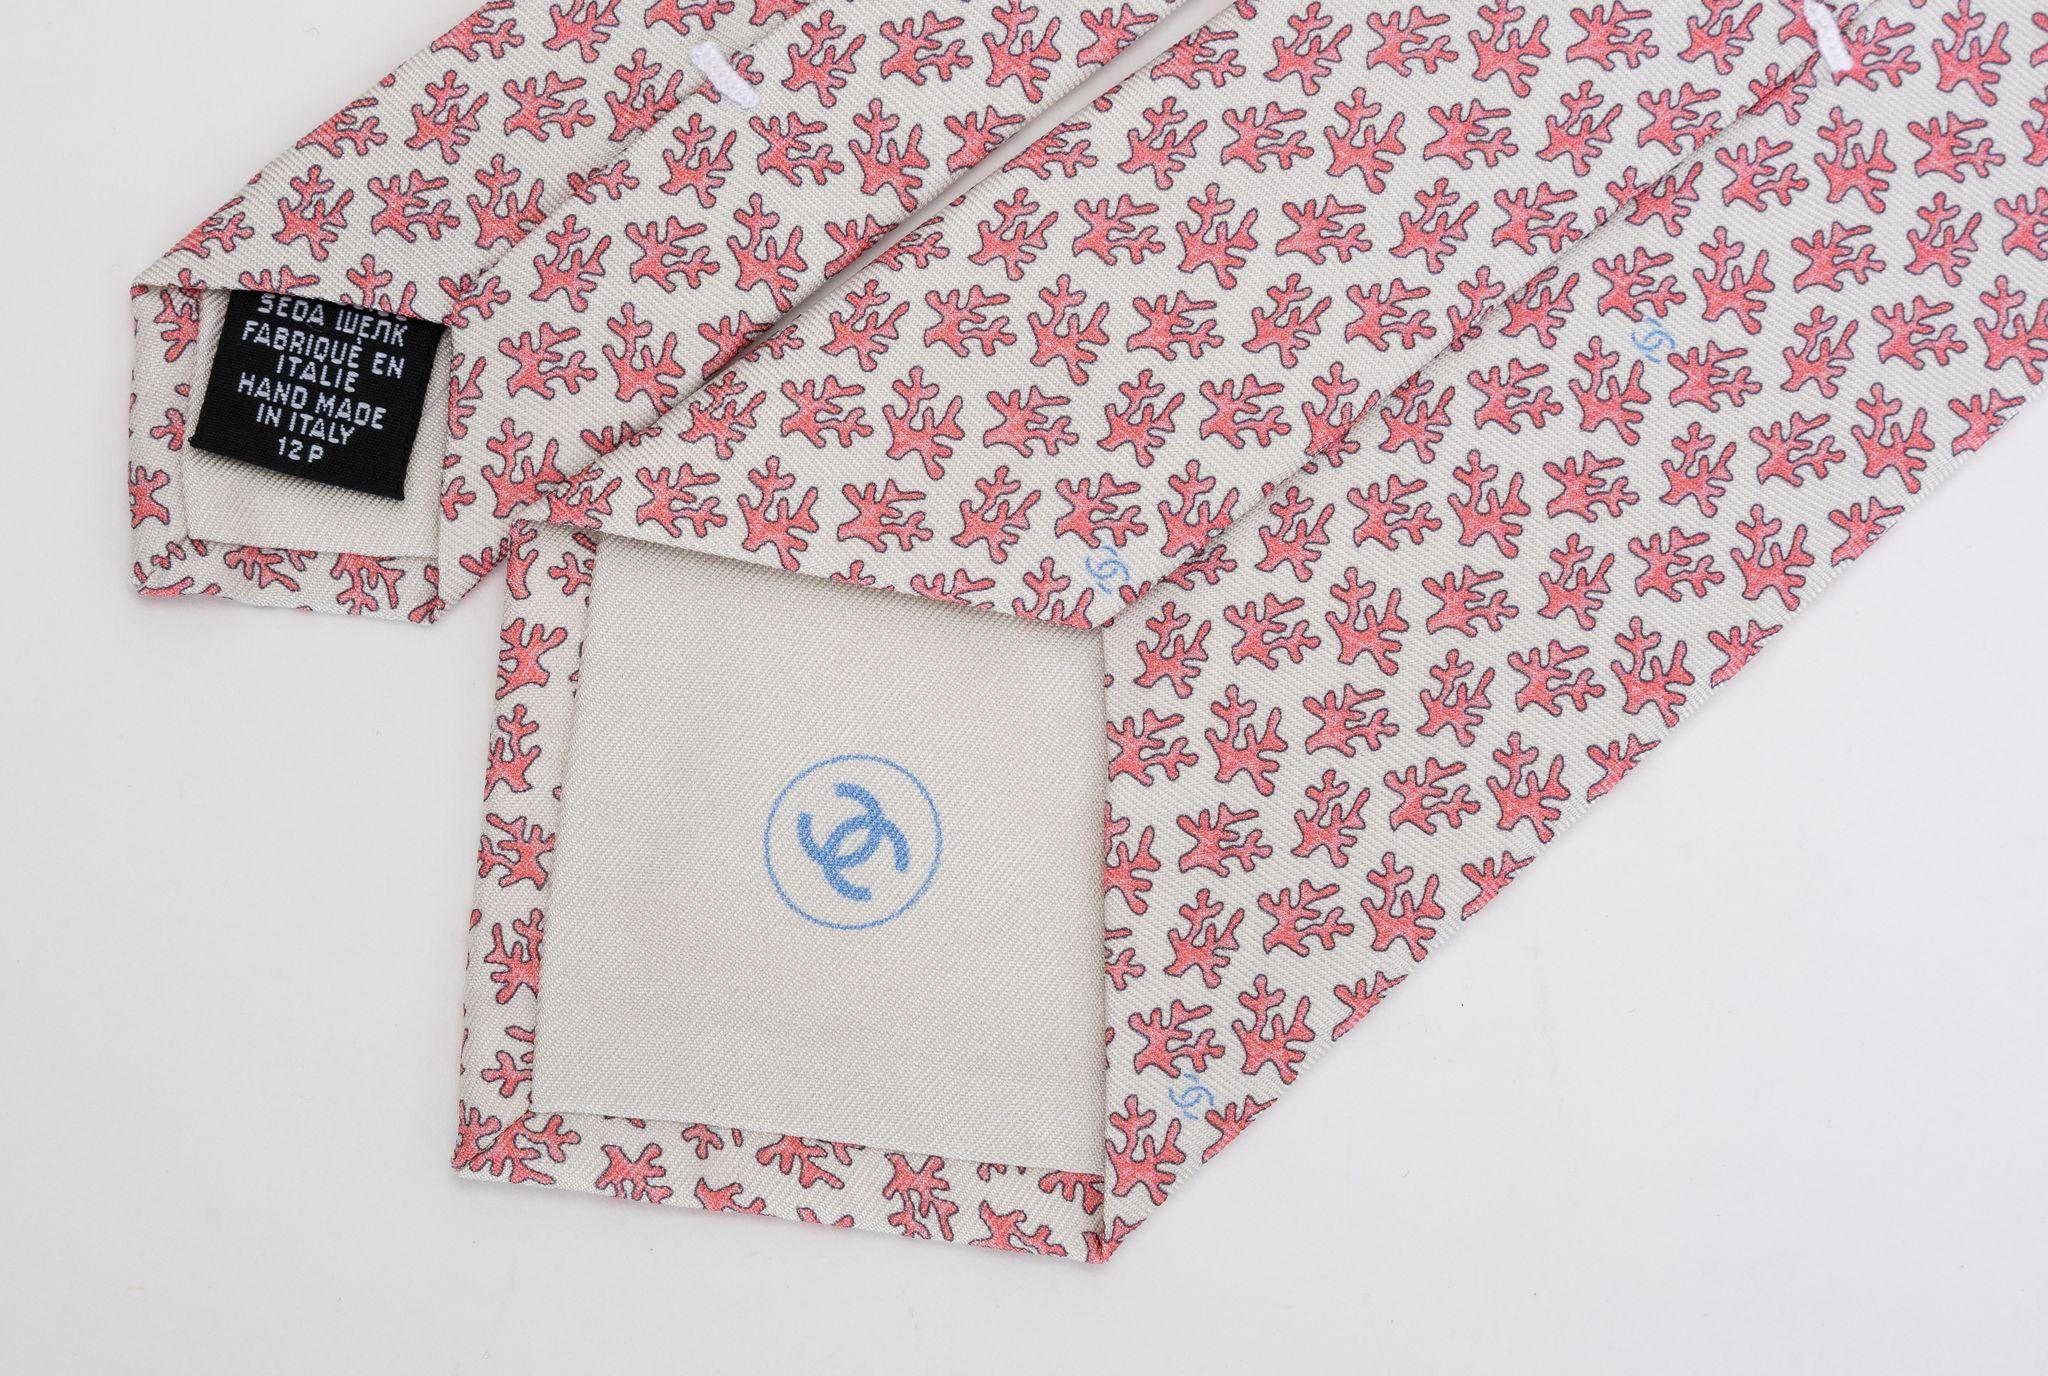 Chanel brandneue Krawatte aus 100% Seide in Creme und rosa Korallen Branch Muster. Label der Zusammensetzung, Markenlabel und Unterschriftenkette. Kommt mit Originalumschlag.